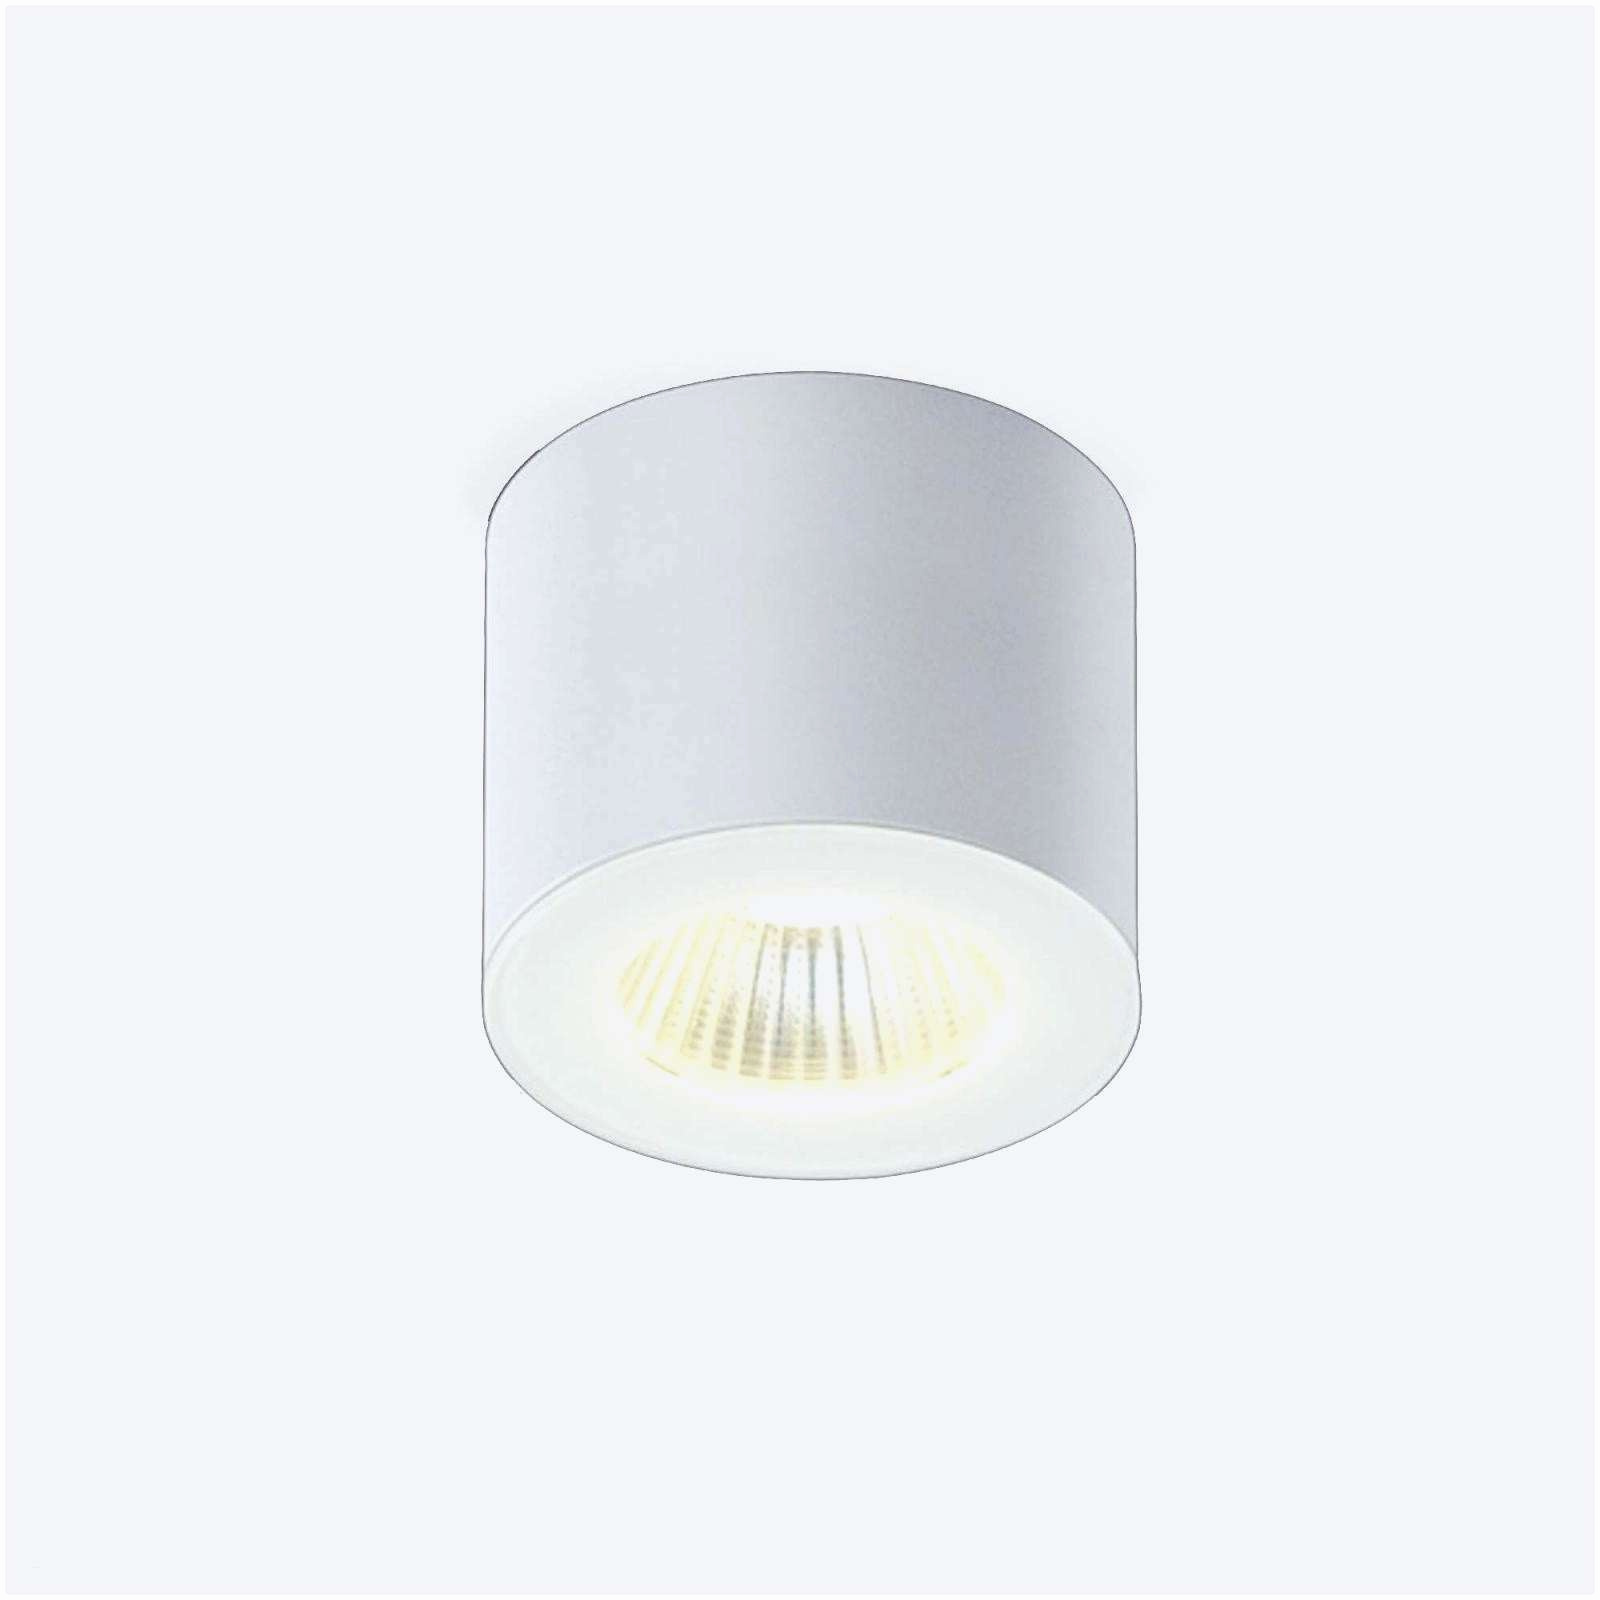 Abri De Jardin Ikea Élégant source D Inspiration Lampe De Bureau Industrielle Luckytroll